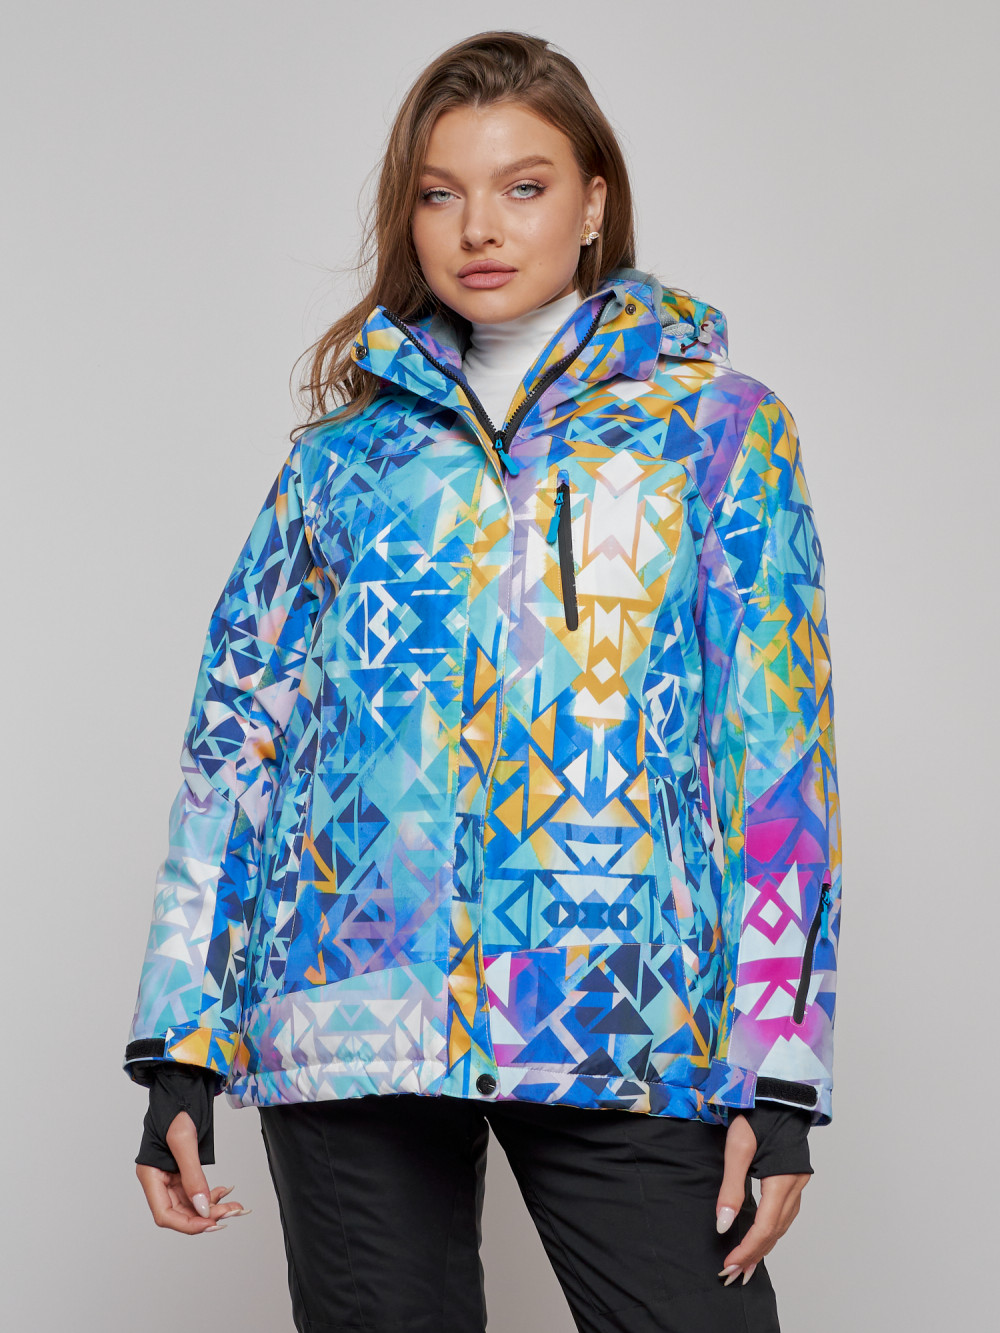 Купить оптом Горнолыжная куртка женская зимняя большого размера разноцветного цвета 2270-1Rz в Екатеринбурге